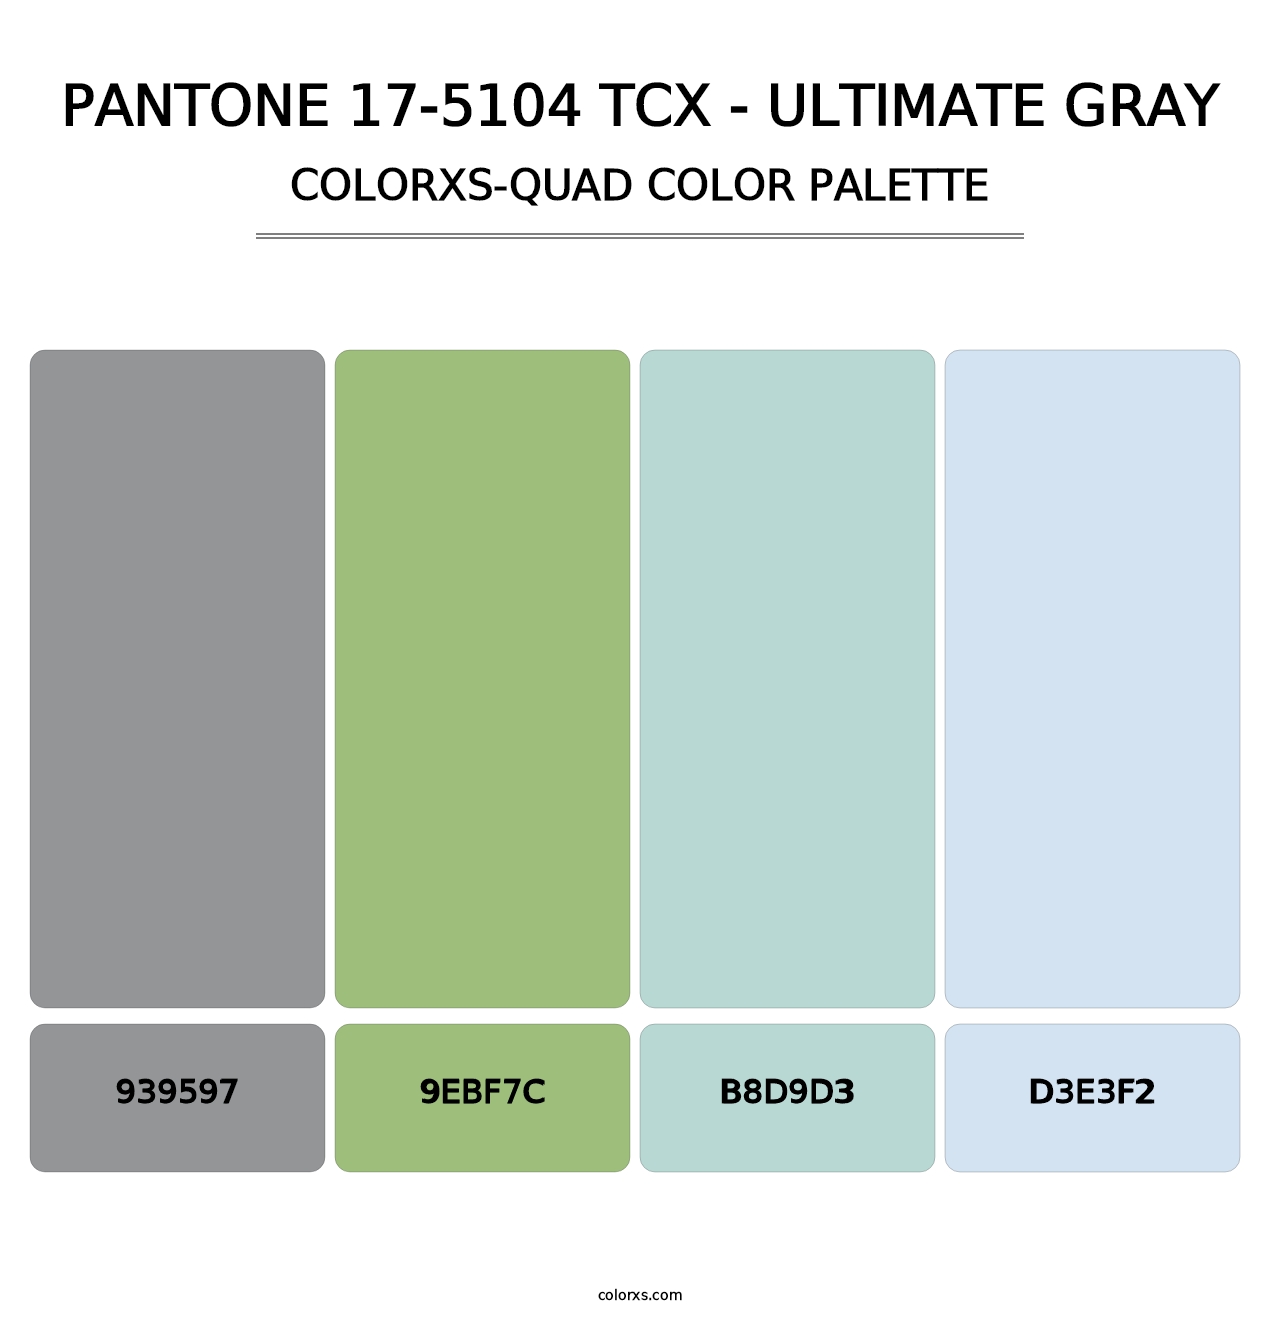 PANTONE 17-5104 TCX - Ultimate Gray - Colorxs Quad Palette